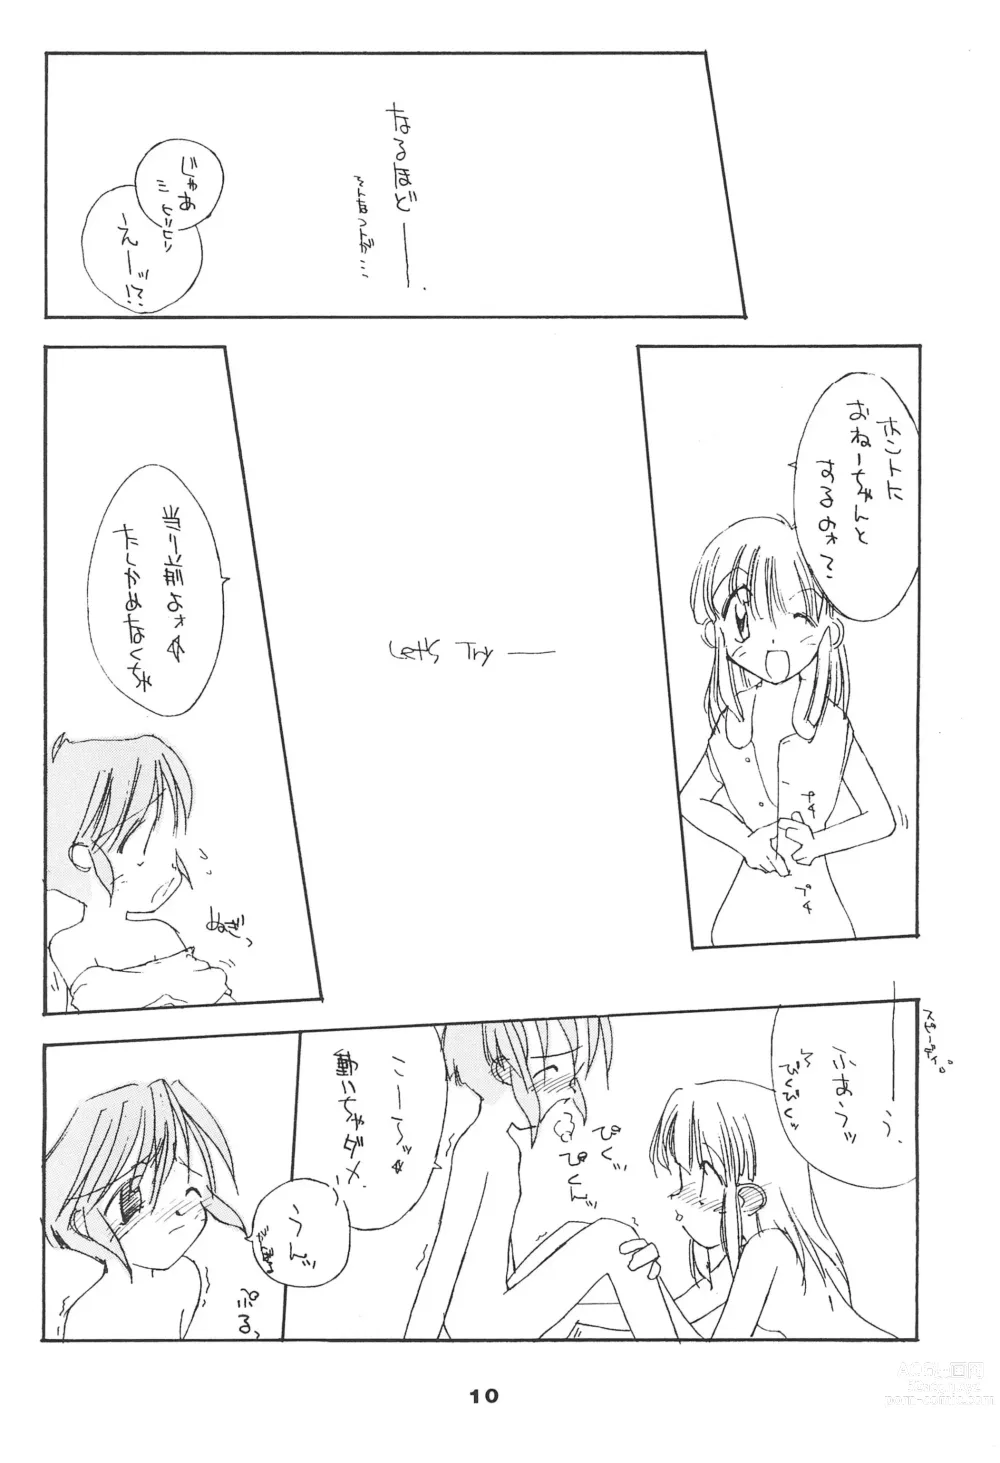 Page 10 of doujinshi Liru 3